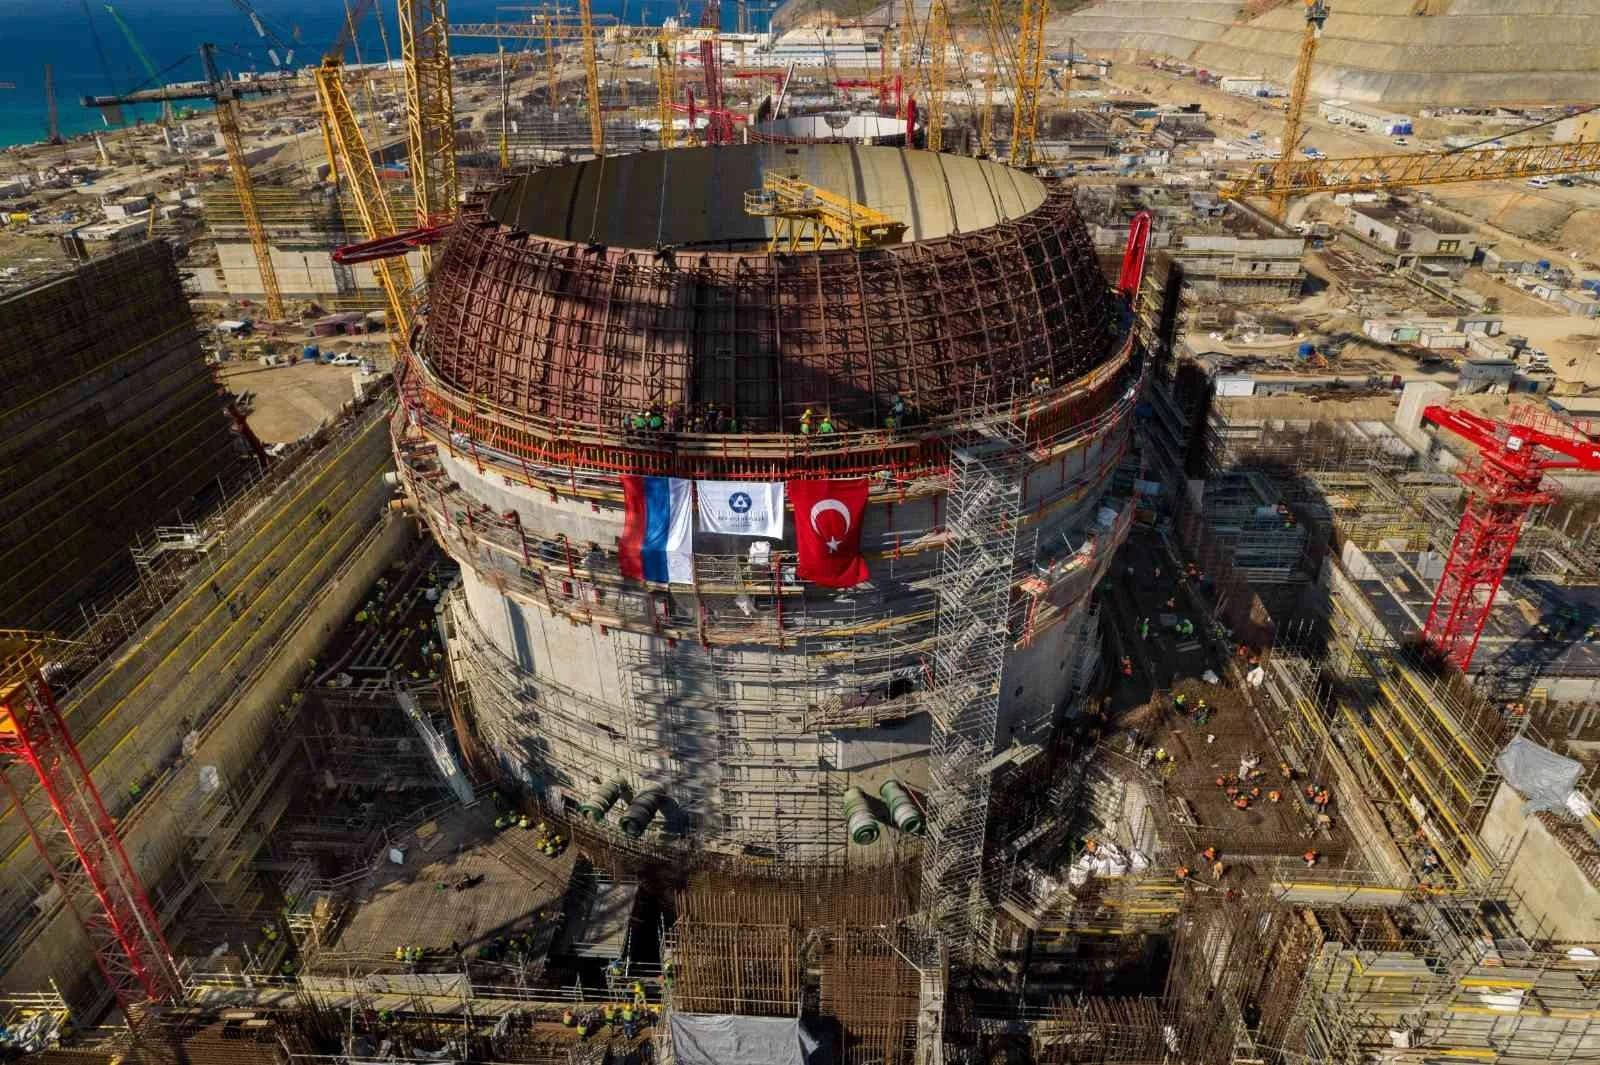 Akkuyu NGSde test edilecek nükleer yakıt simülatörleri Türkiyeye gönderildi